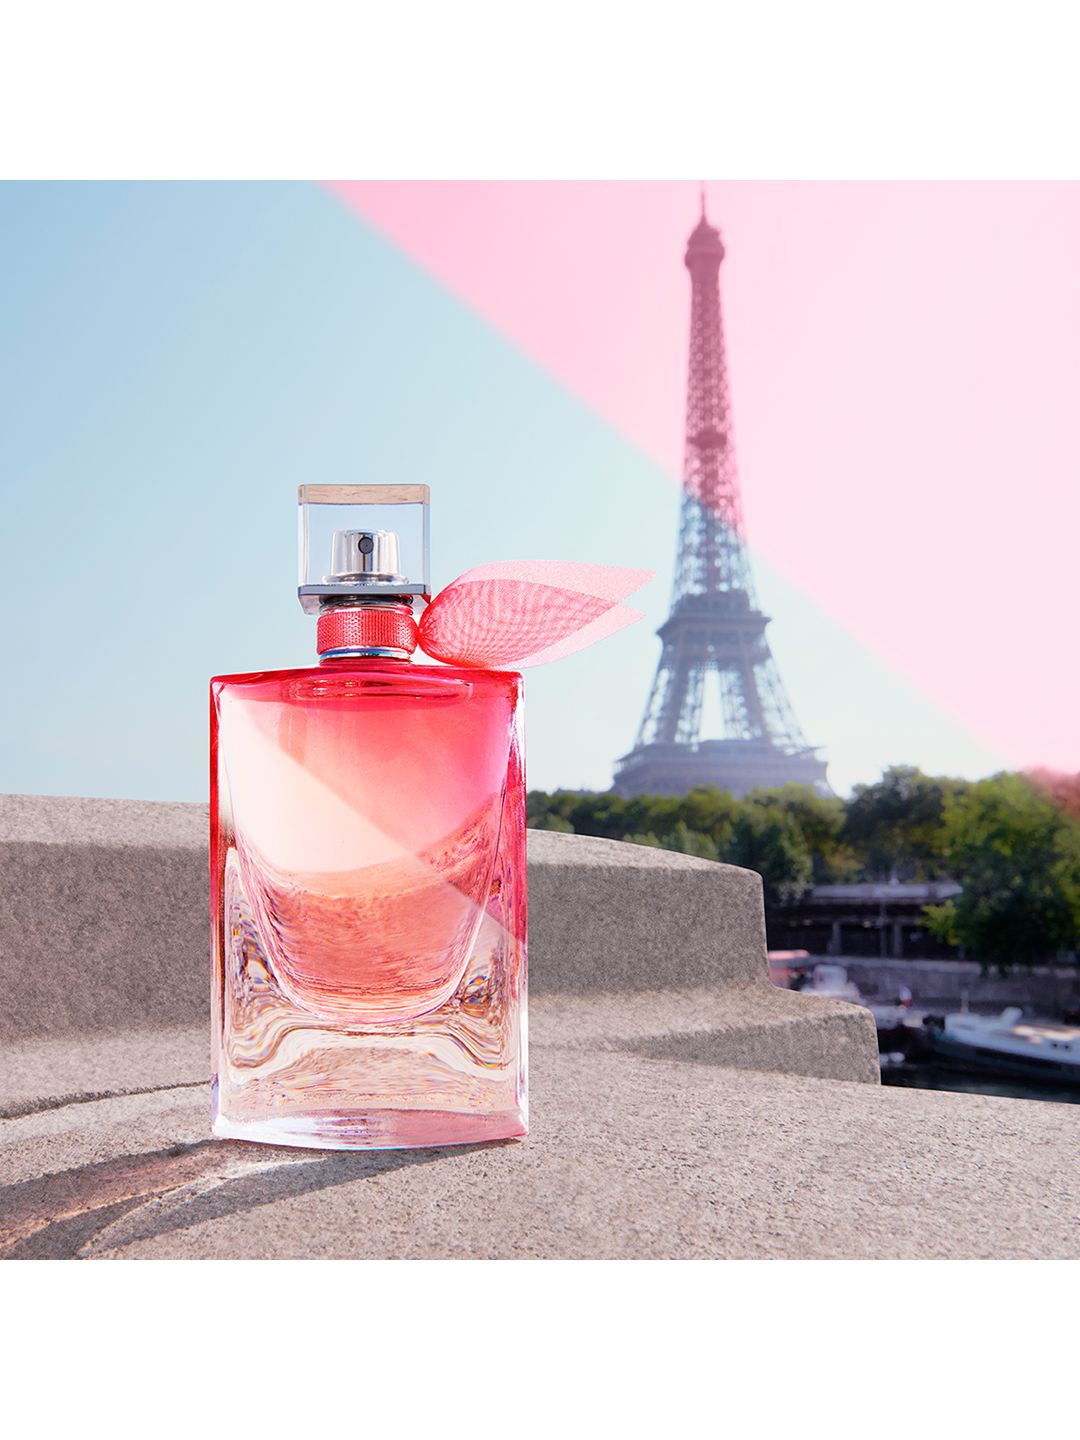 Lancome La Vie Est Belle - Eau de Parfum